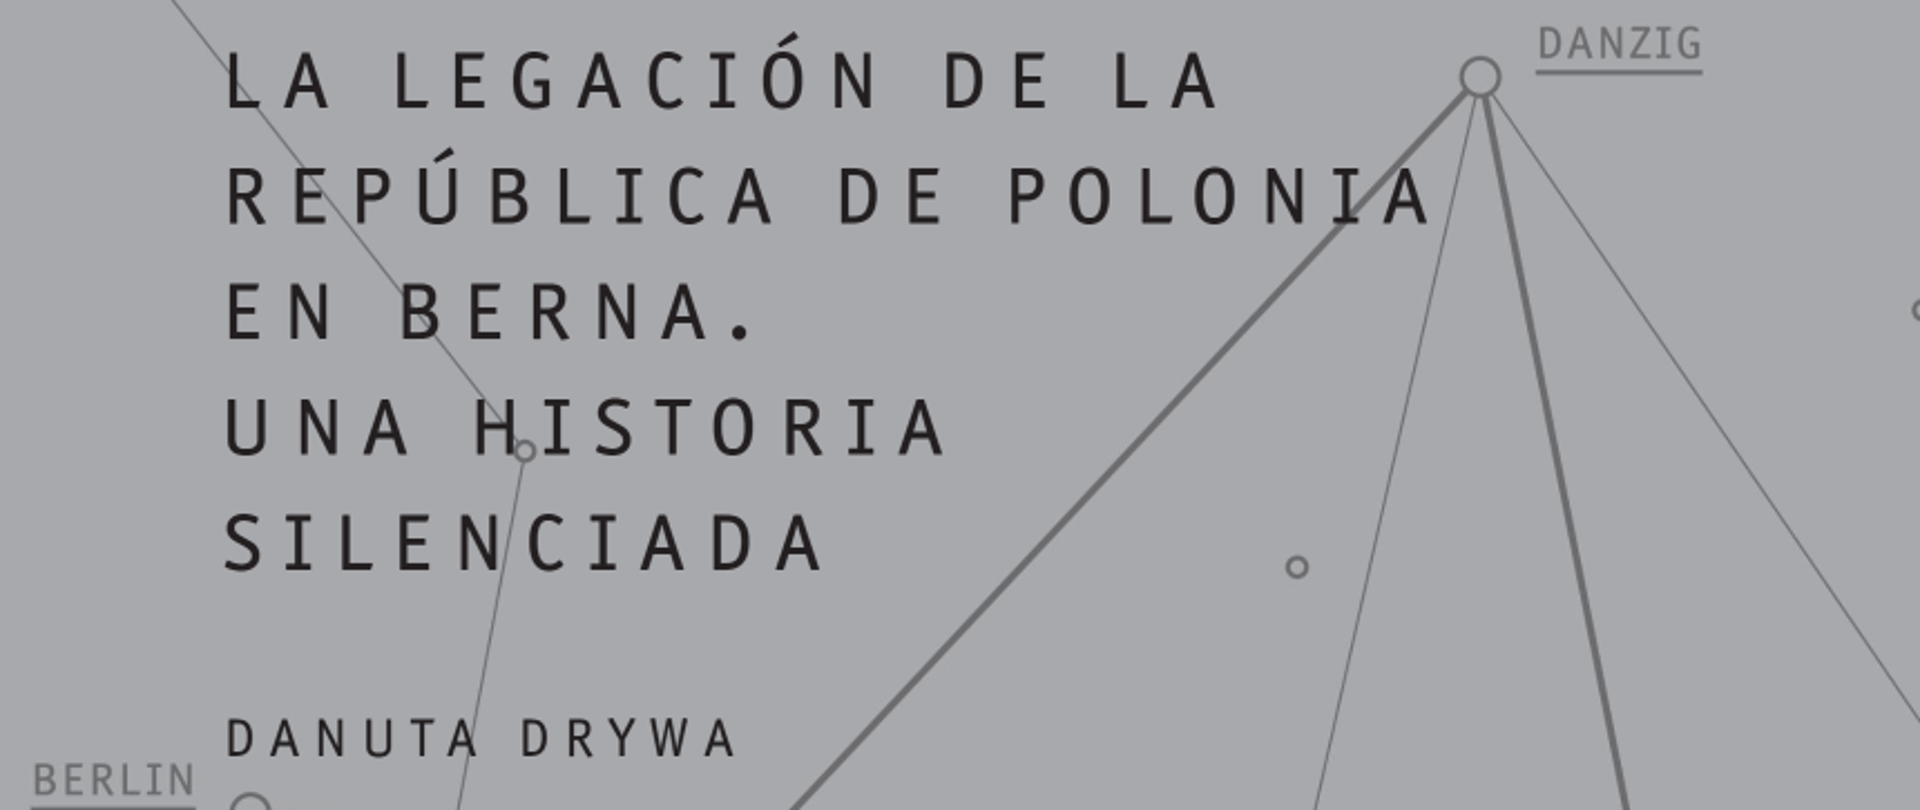 El 28 de septiembre de 2022 en la Legislatura de la Ciudad Autónoma de Buenos Aires tuvo lugar la presentación del libro “LA LEGACIÓN DE LA REPÚBLICA DE POLONIA EN BERNA. UNA HISTORIA SILENCIADA” publicado en español por la Embajada de la República de Polonia en Buenos Aires junto con el Ministerio de Cultura y Patrimonio Nacional de la República de Polonia. 